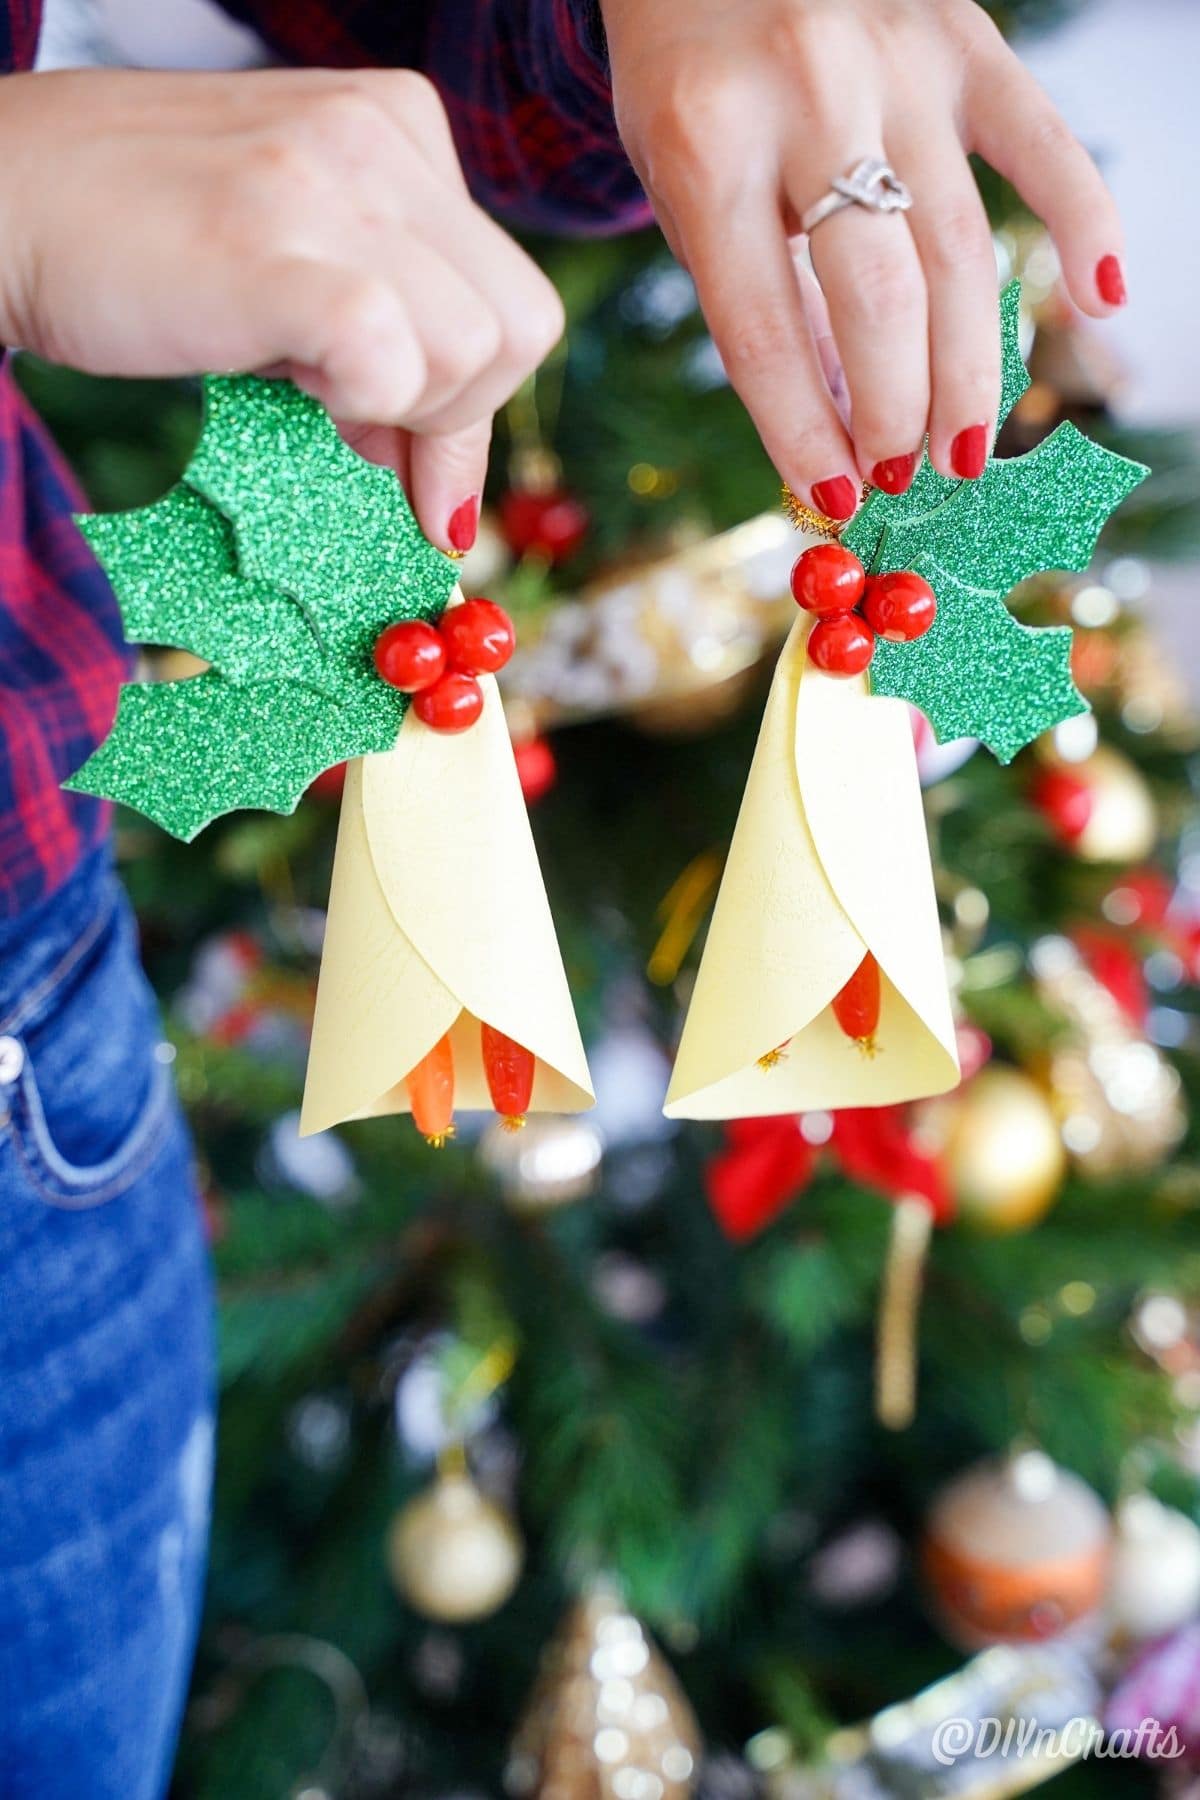 ženske roke držijo papirnate okraske ob božičnem drevesu